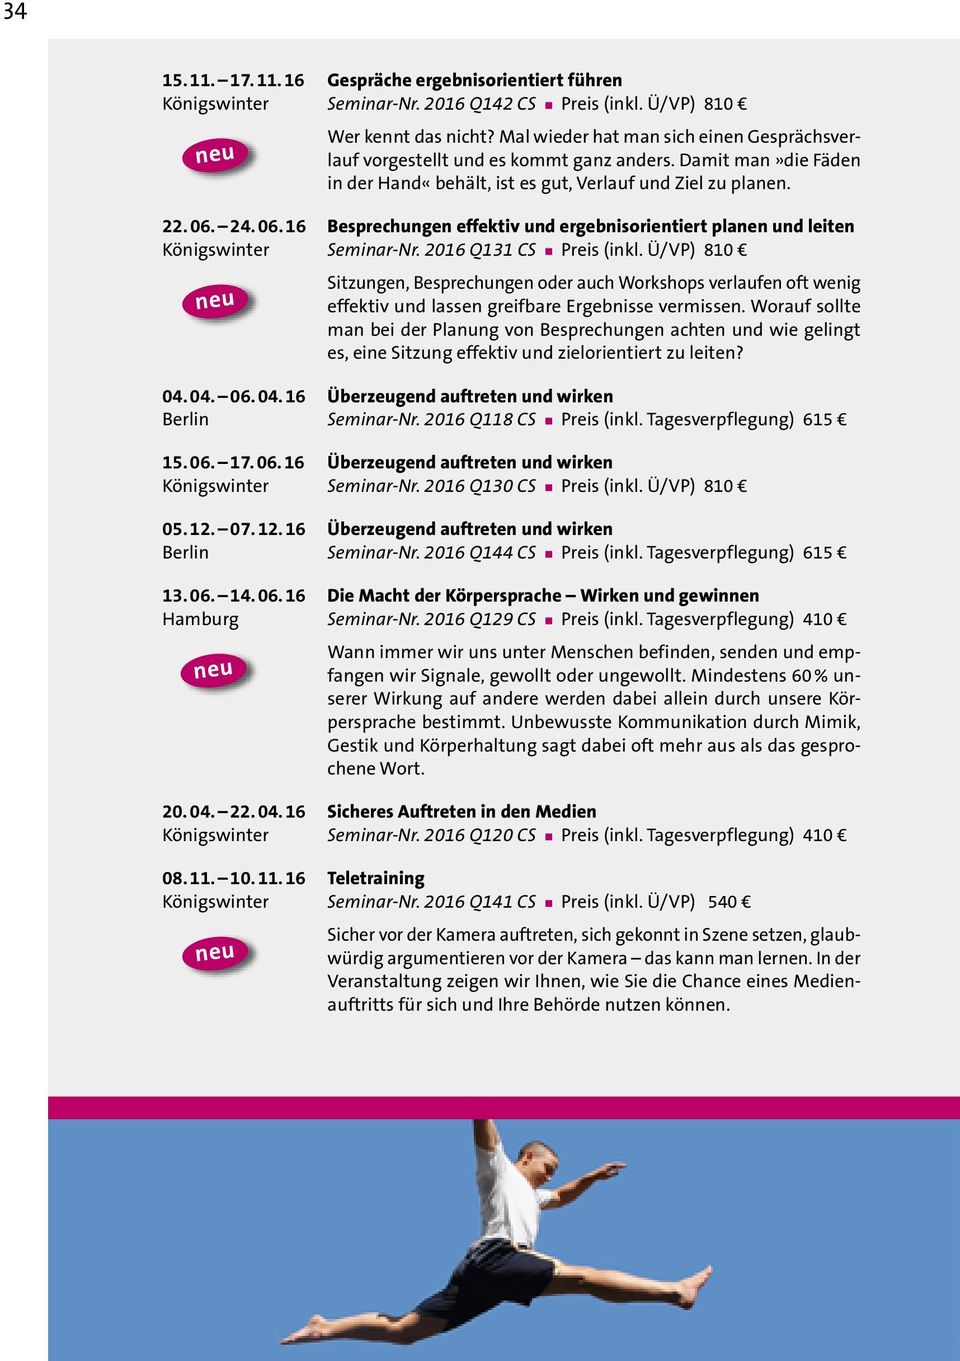 24. 06. 16 Besprechungen effektiv und ergebnisorientiert planen und leiten Königswinter Seminar-Nr. 2016 Q131 CS Preis (inkl.